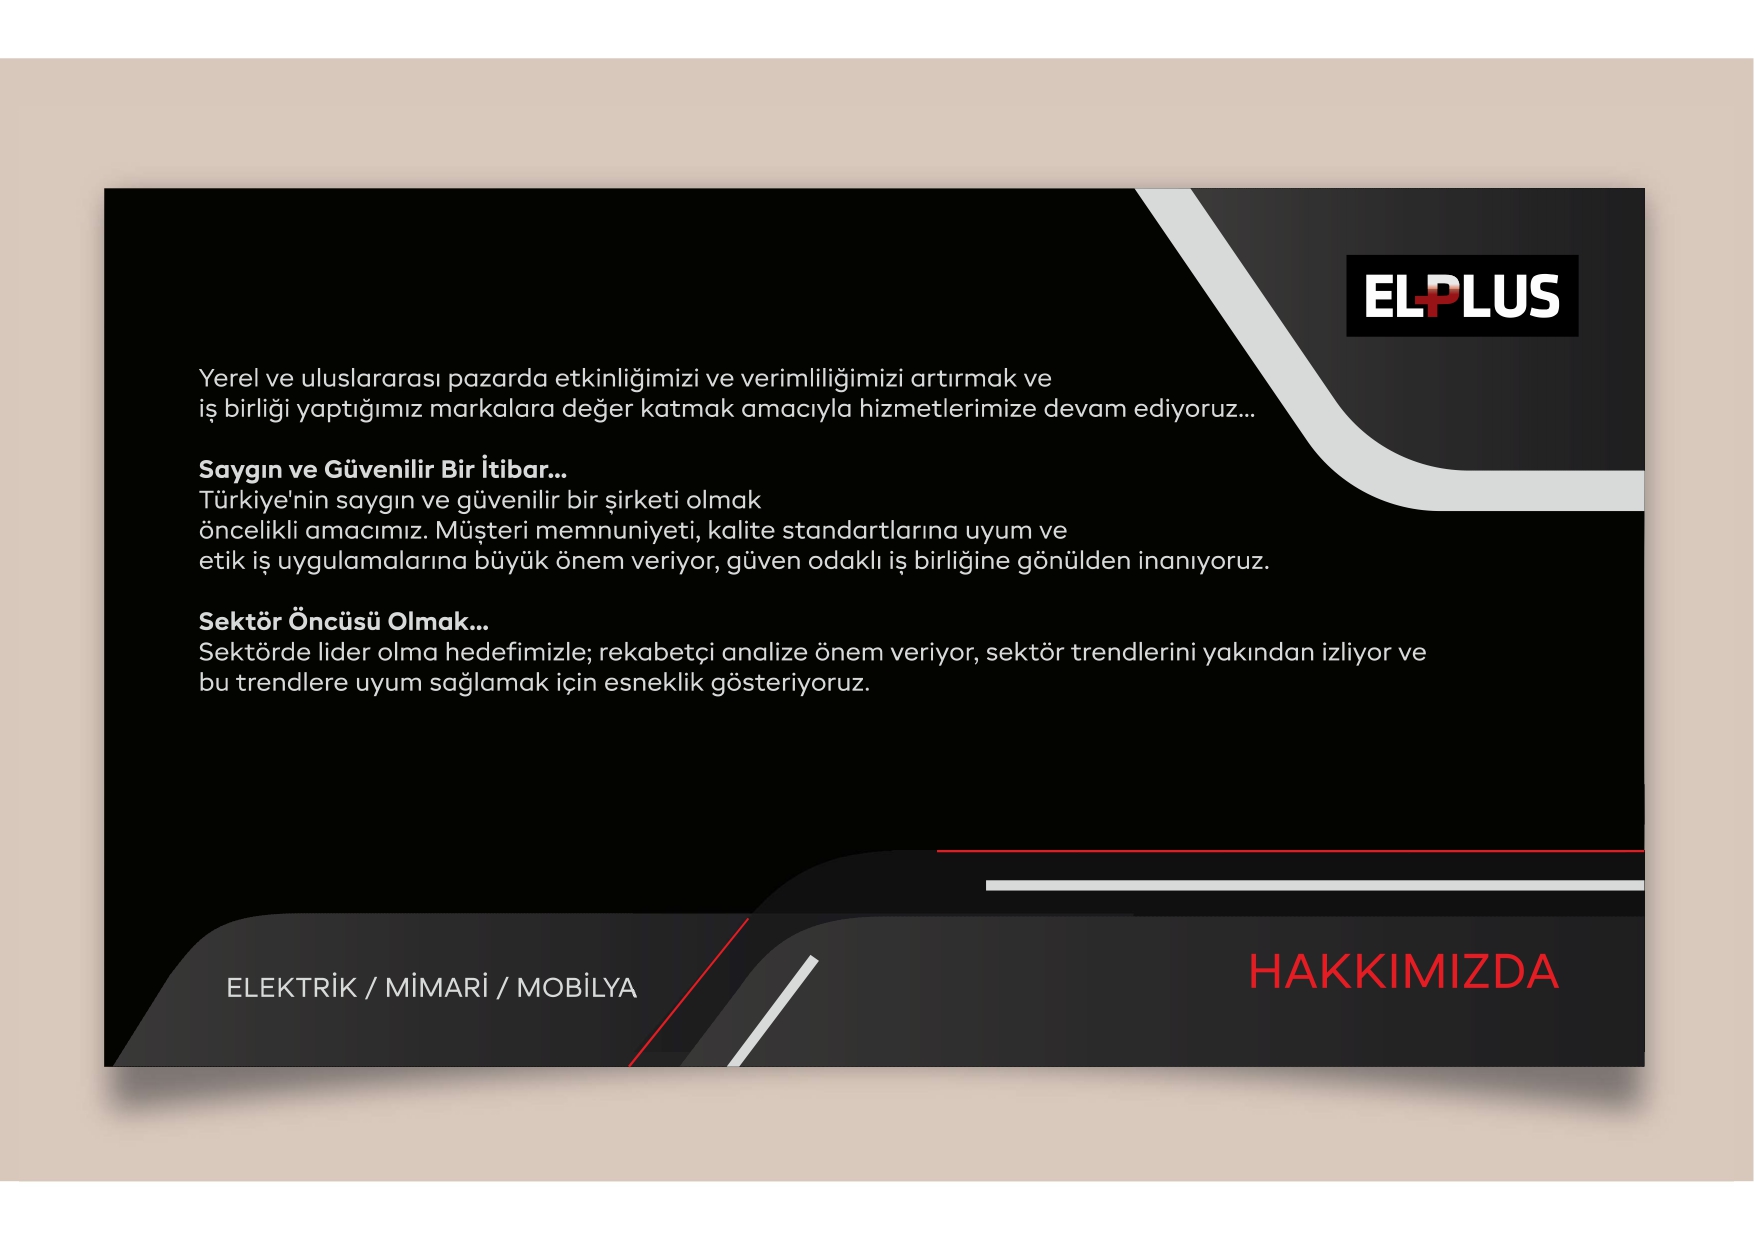 ELPLUS TURKCE_page-0002.jpg (387 KB)